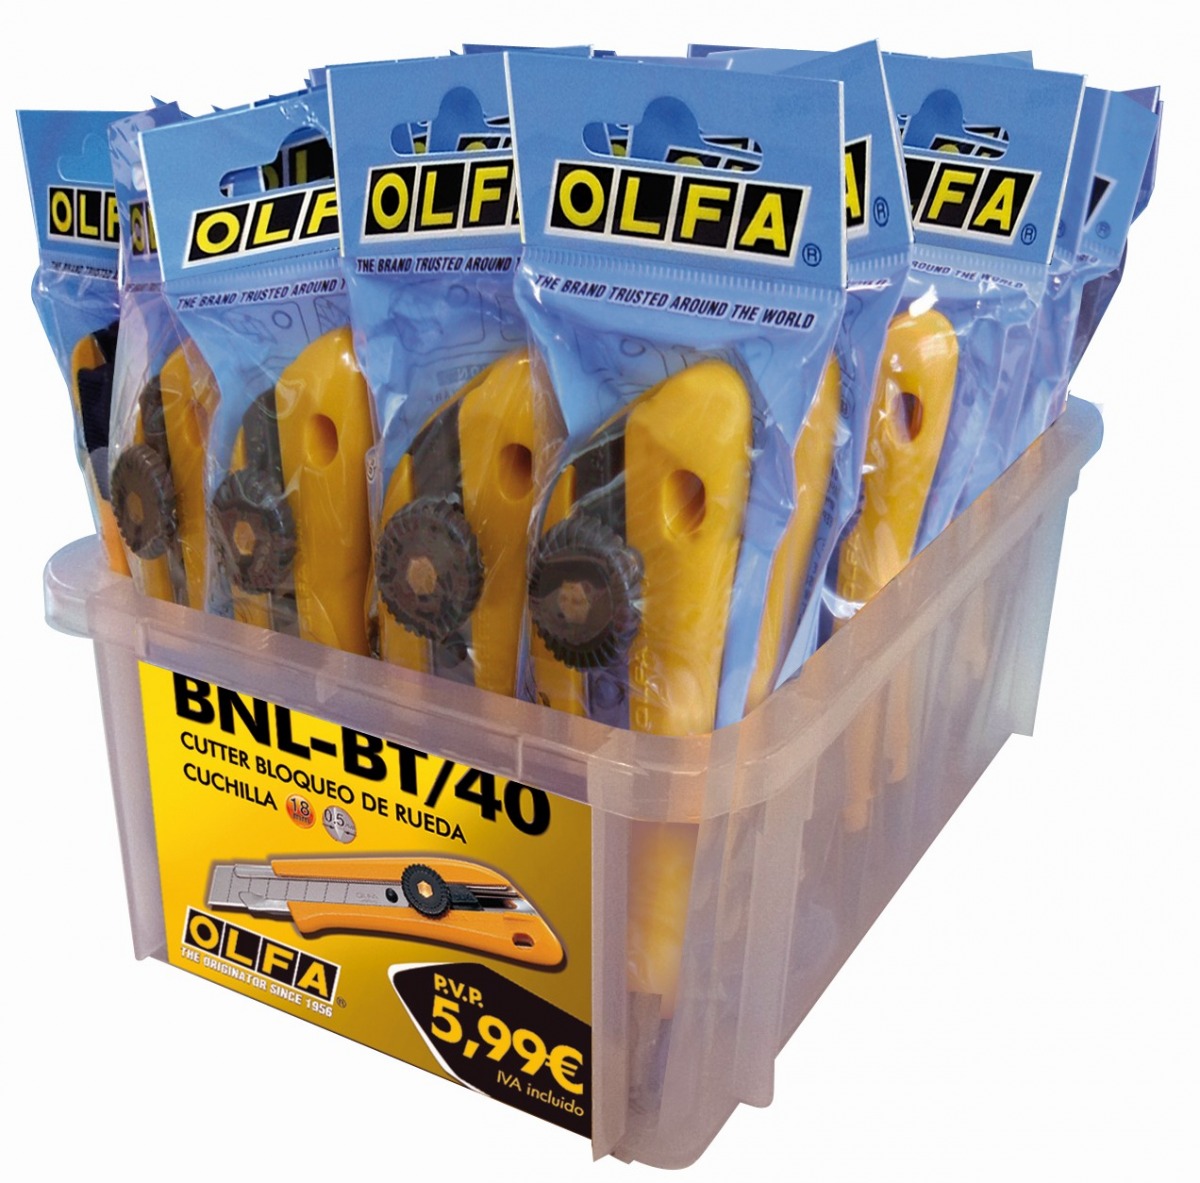 Cúters de bloqueo manual BN-L en bolsa de plástico OLF-BNL-BT/40 | CUTTERS